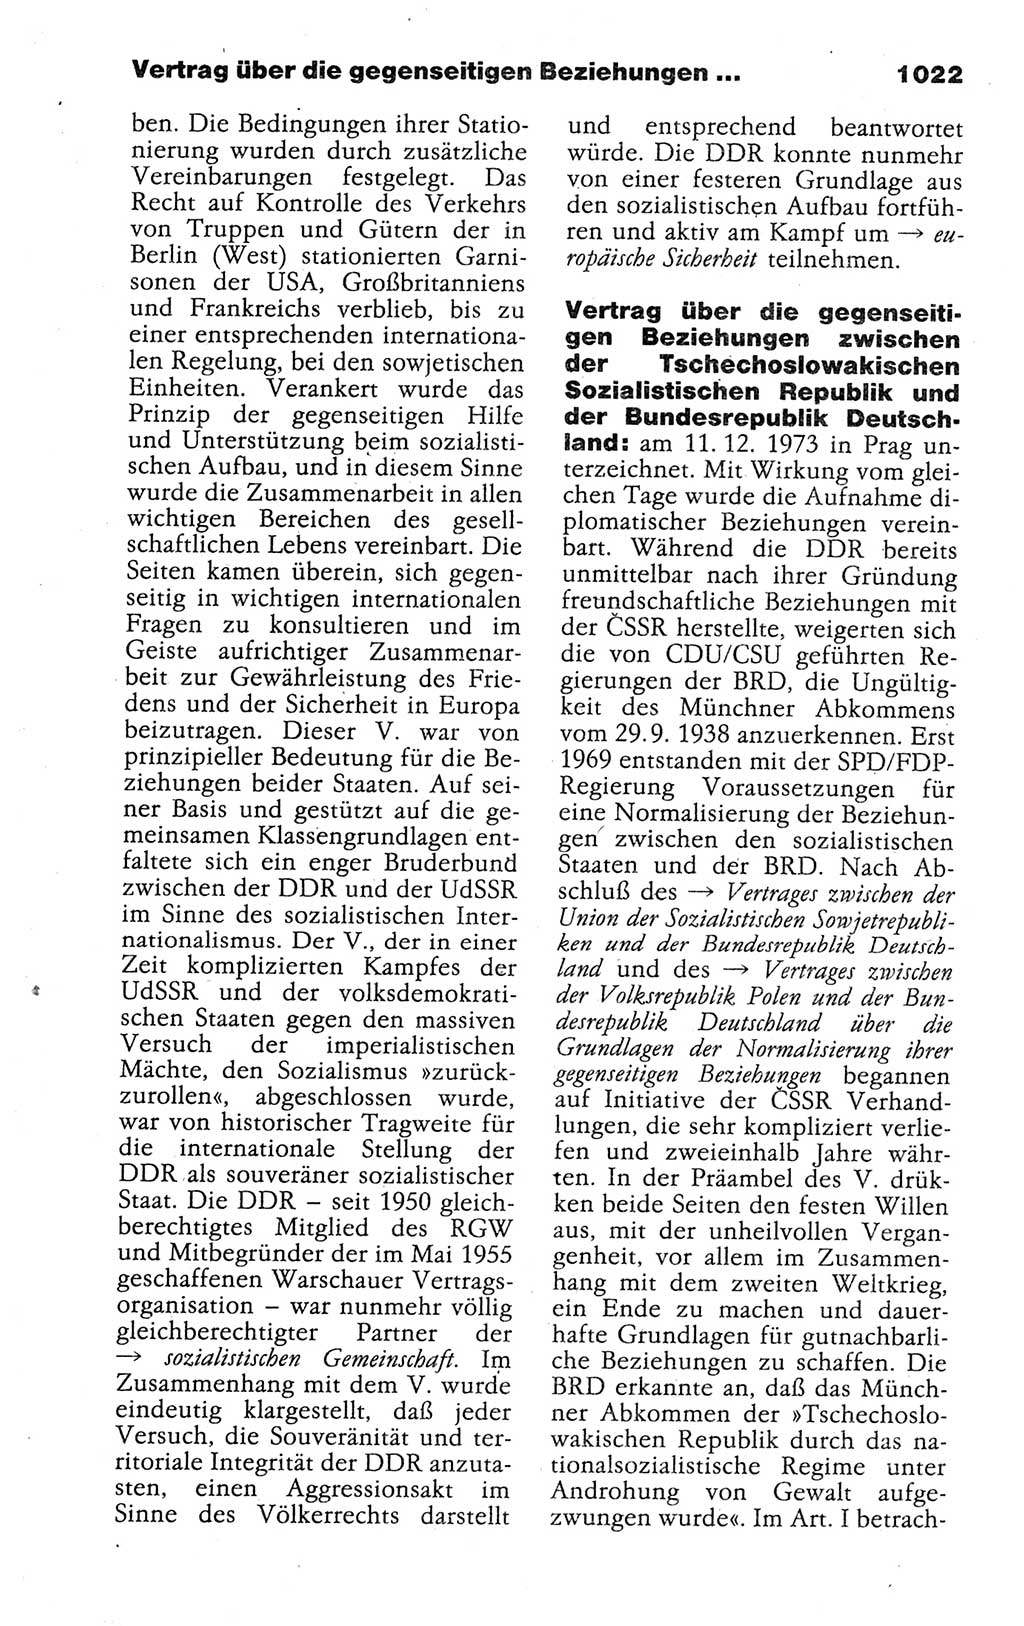 Kleines politisches Wörterbuch [Deutsche Demokratische Republik (DDR)] 1988, Seite 1022 (Kl. pol. Wb. DDR 1988, S. 1022)